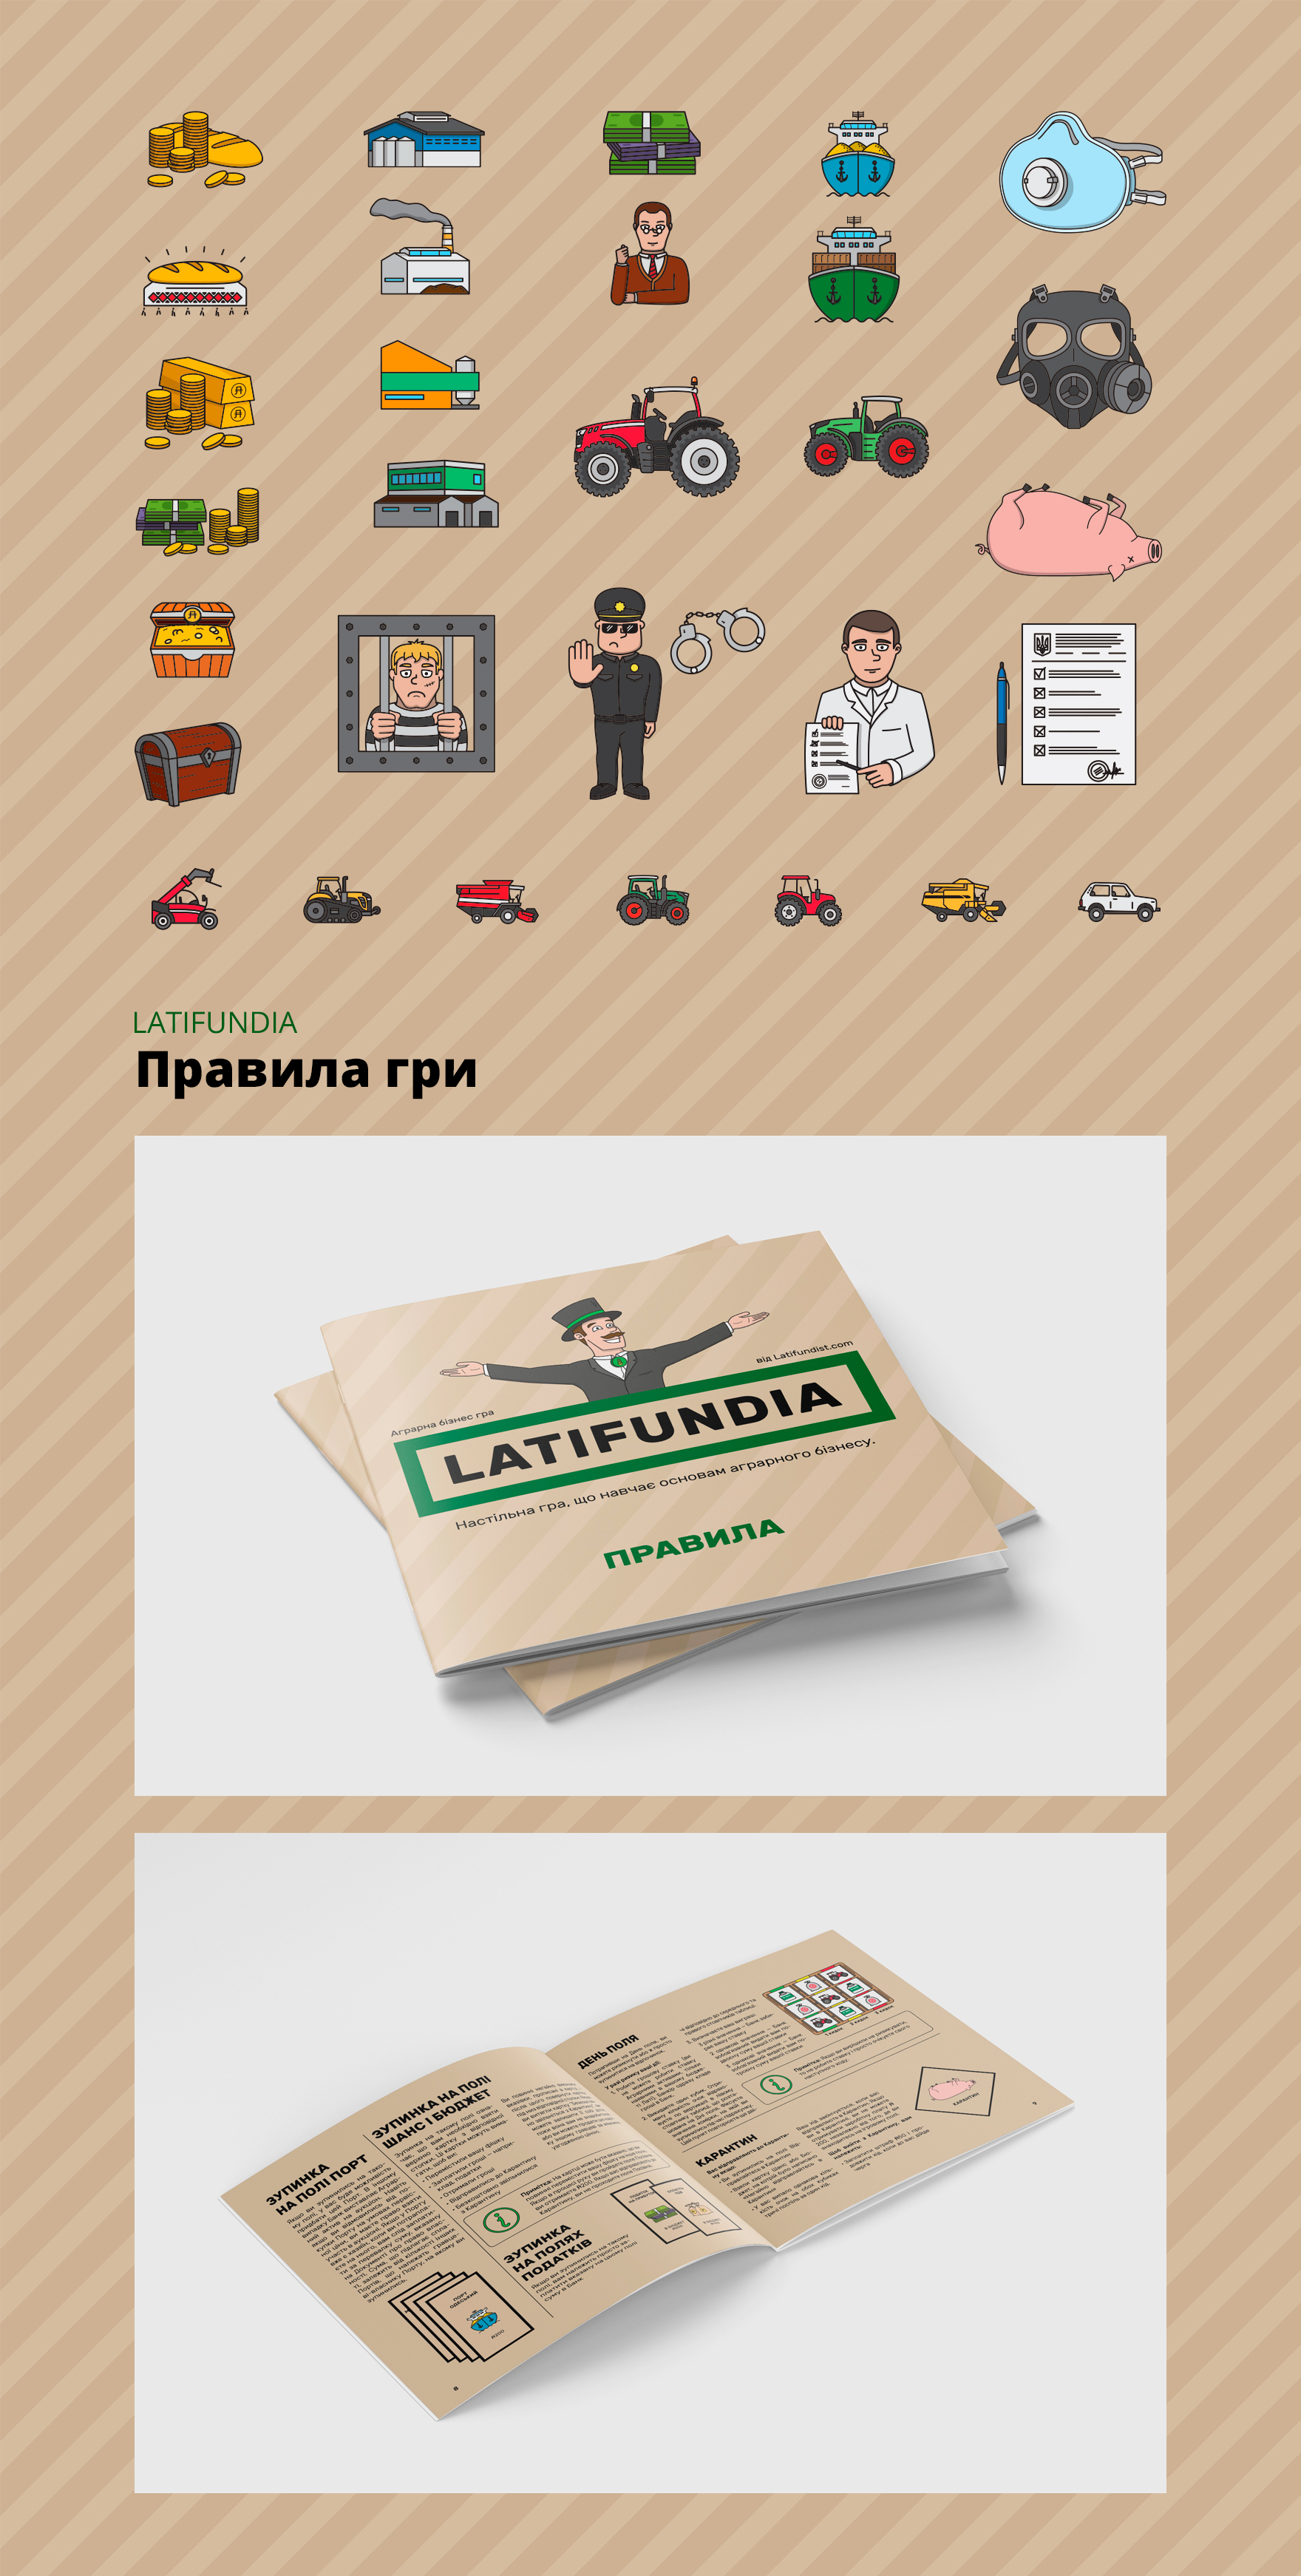 Дизайн іконок та правил гри для настільної гри монополії Latifudia для компанії Latifundist.com